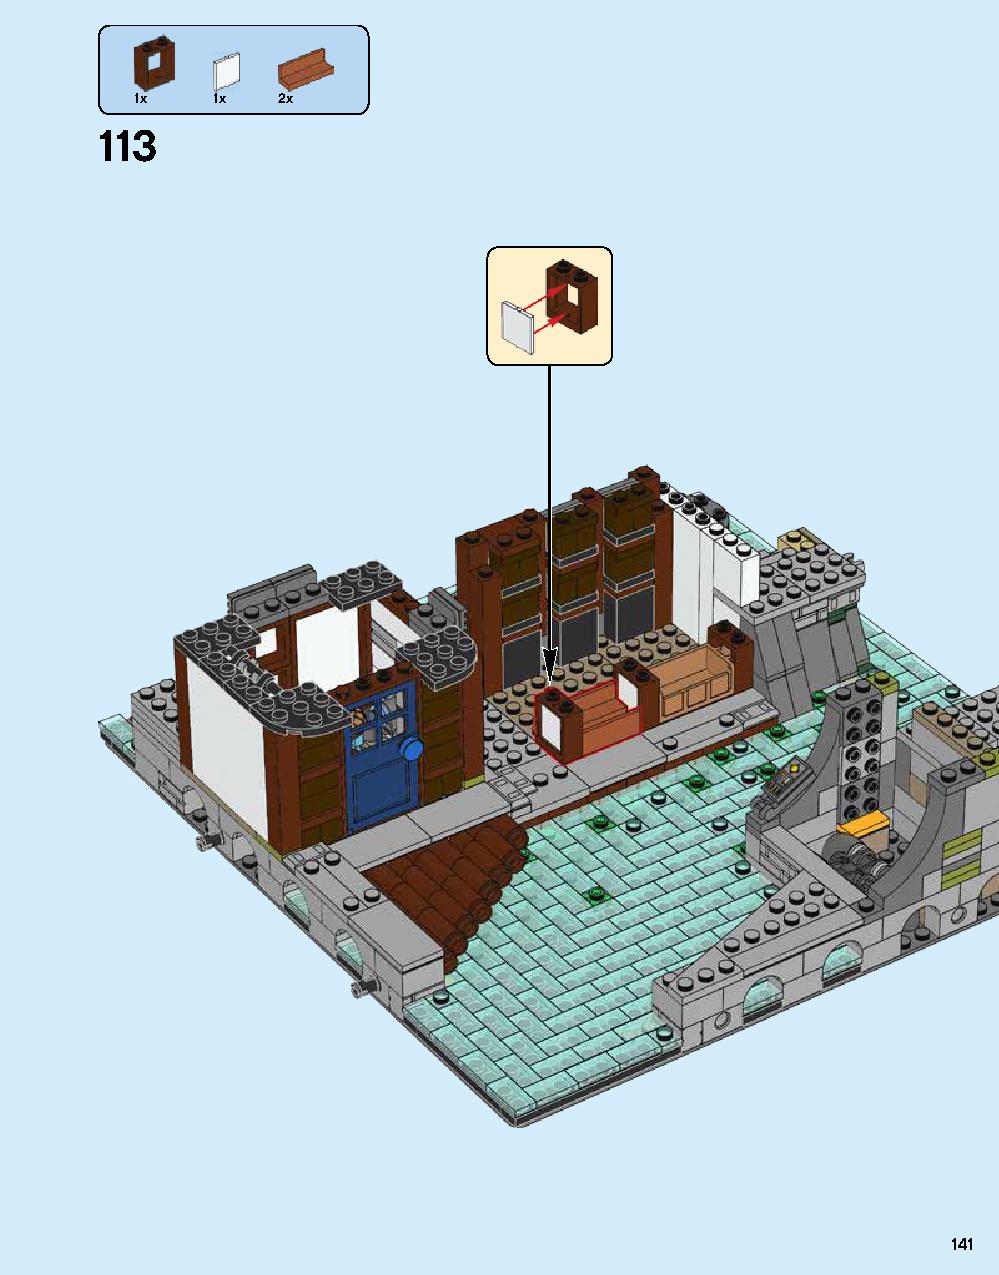 ニンジャゴー シティ 70620 レゴの商品情報 レゴの説明書・組立方法 141 page